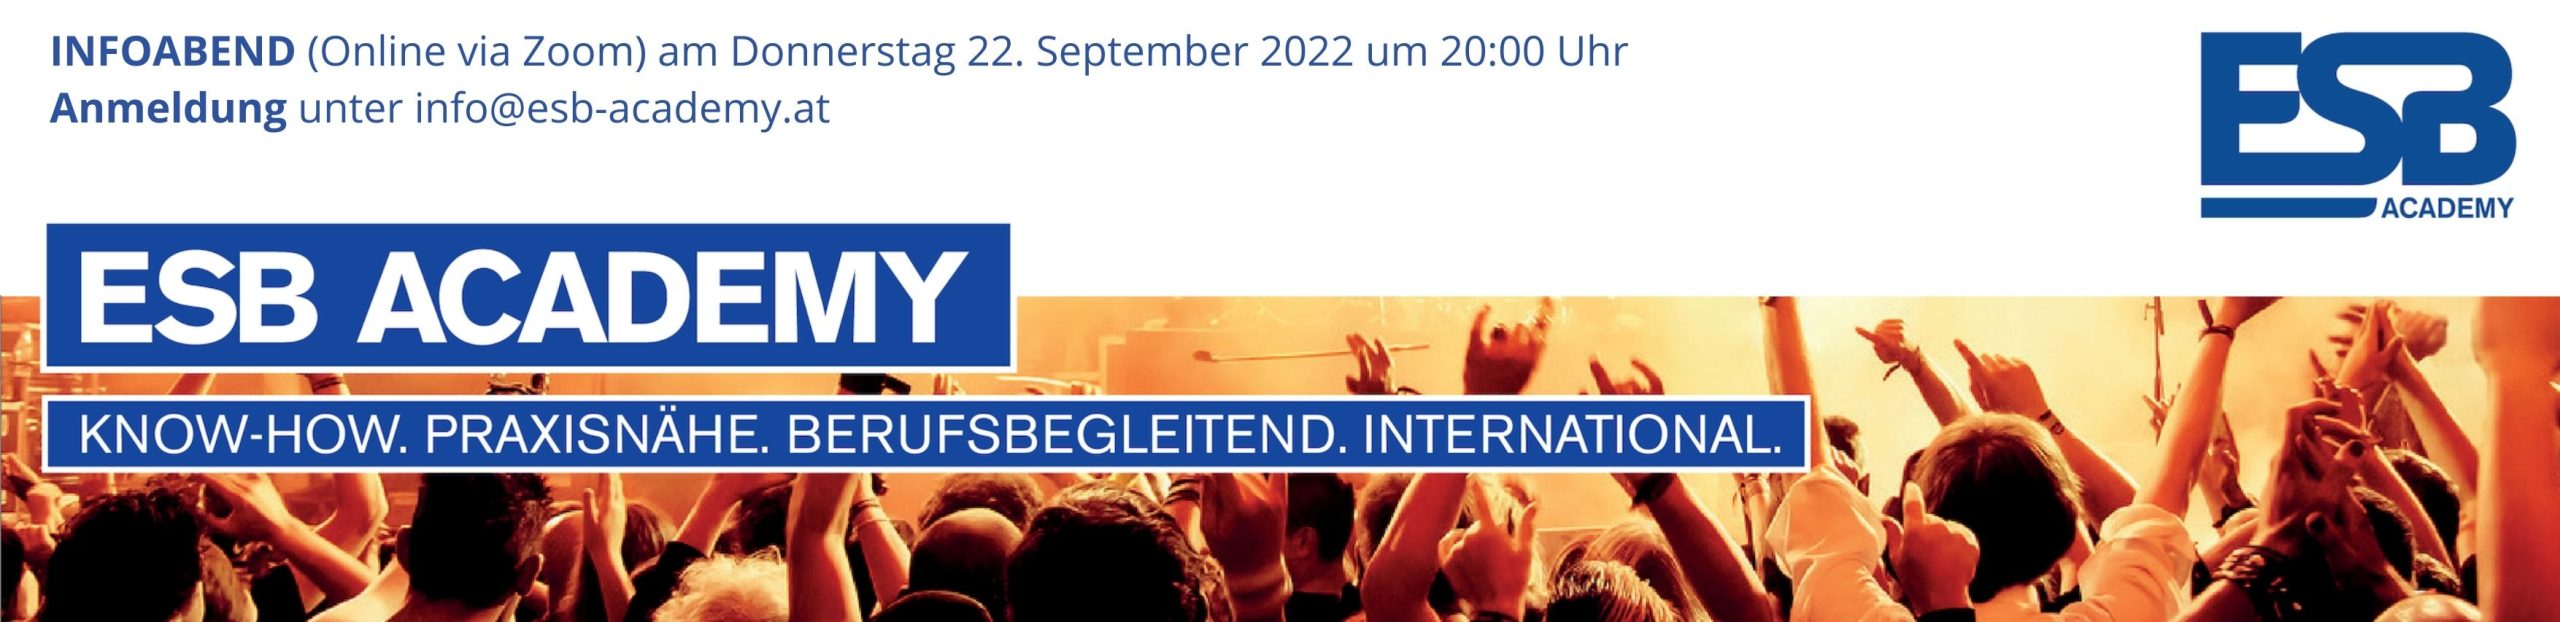 Eventmanagement Ausbildung in Wien, Linz, Salzburg und Tirol – ESB Academy Logo